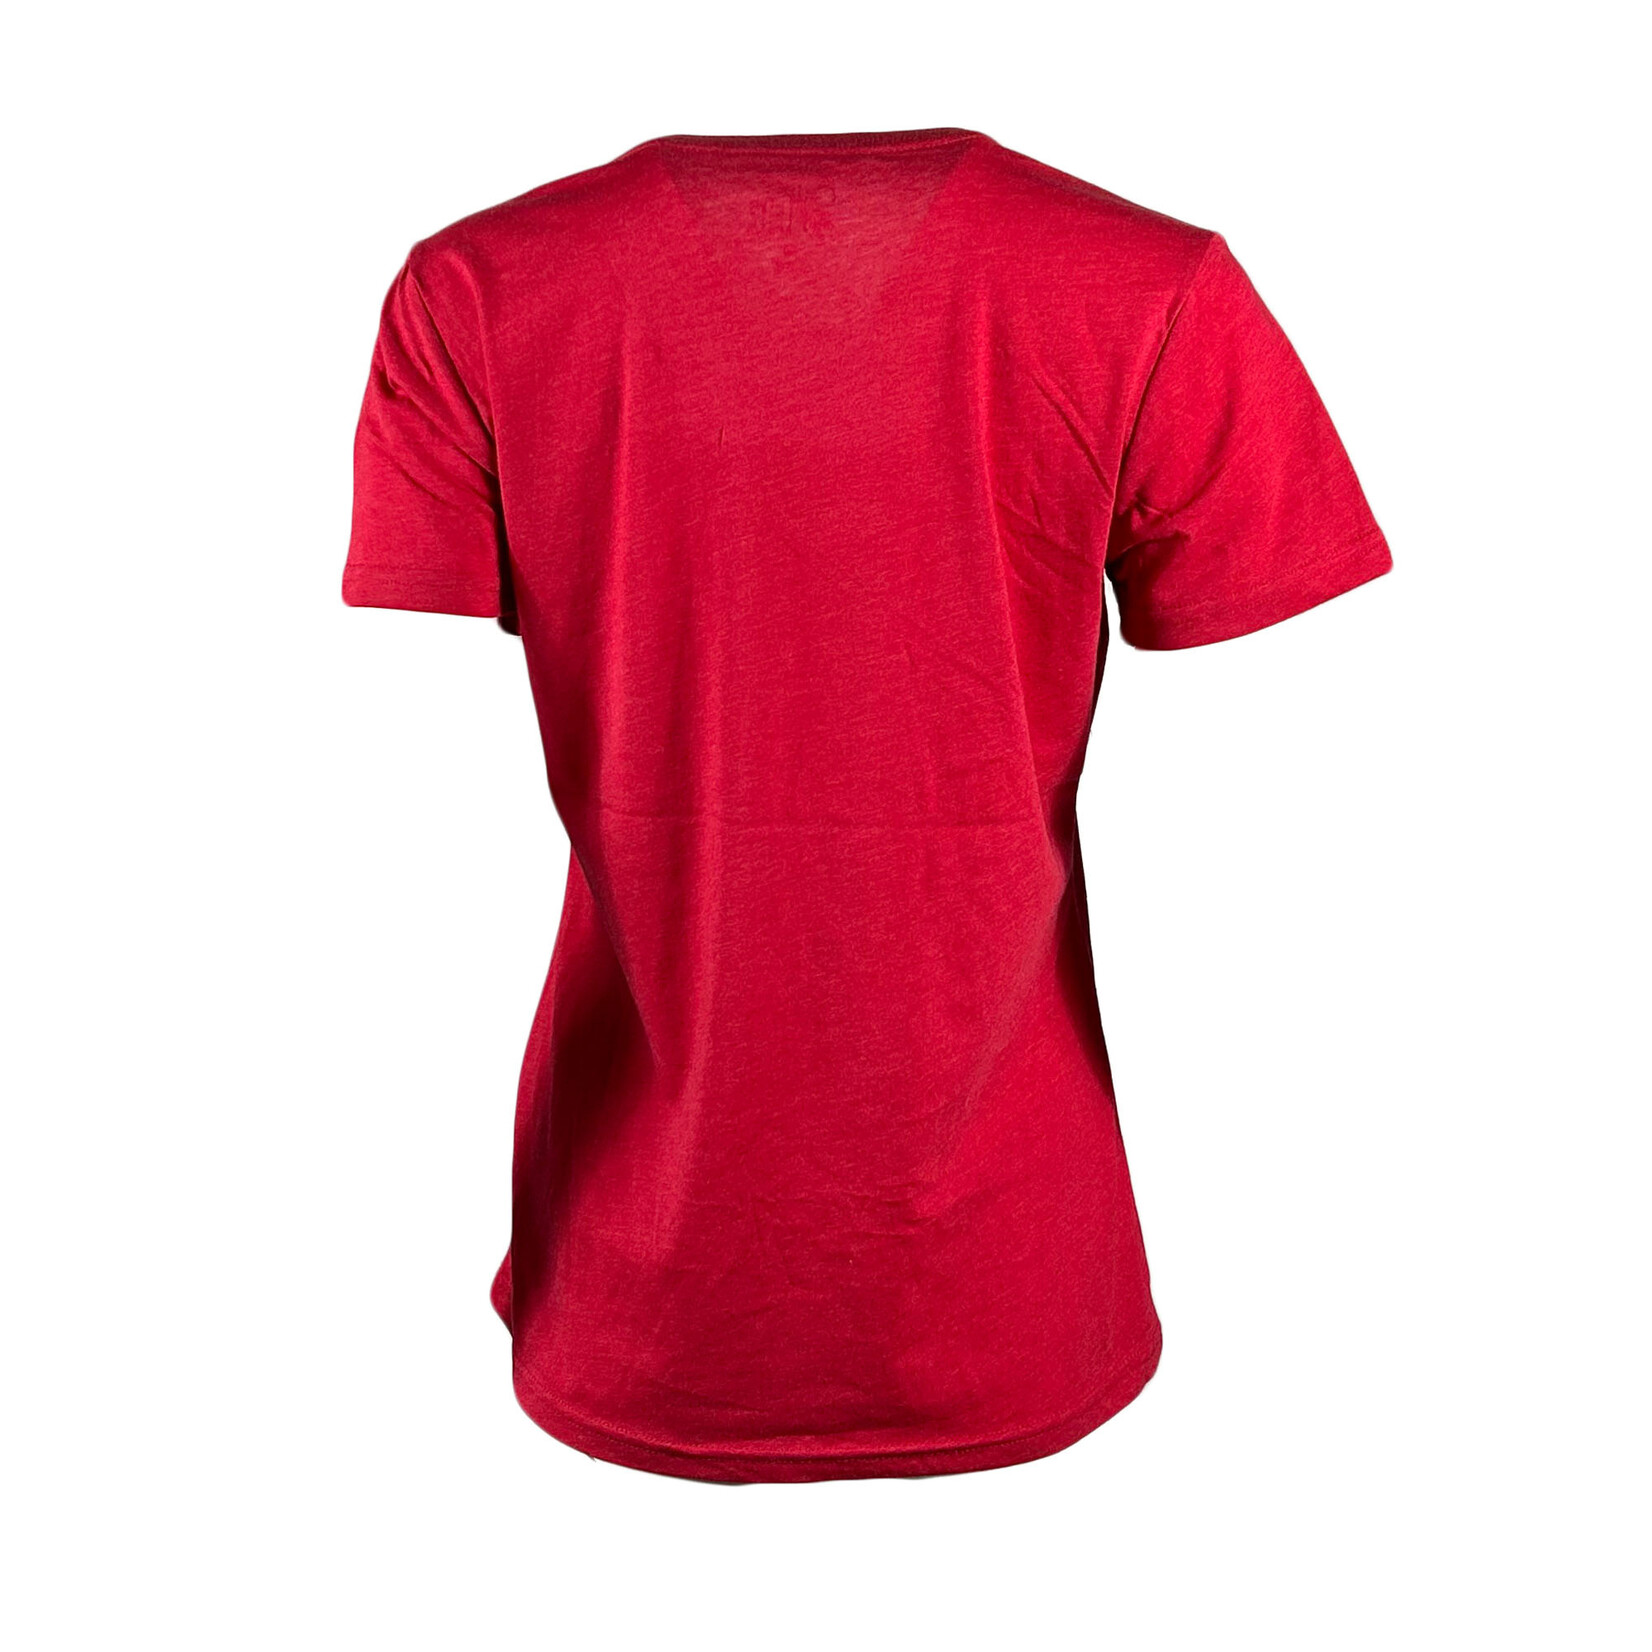 REDBLACKS REDBLACKS Sky Red Women's Shirt